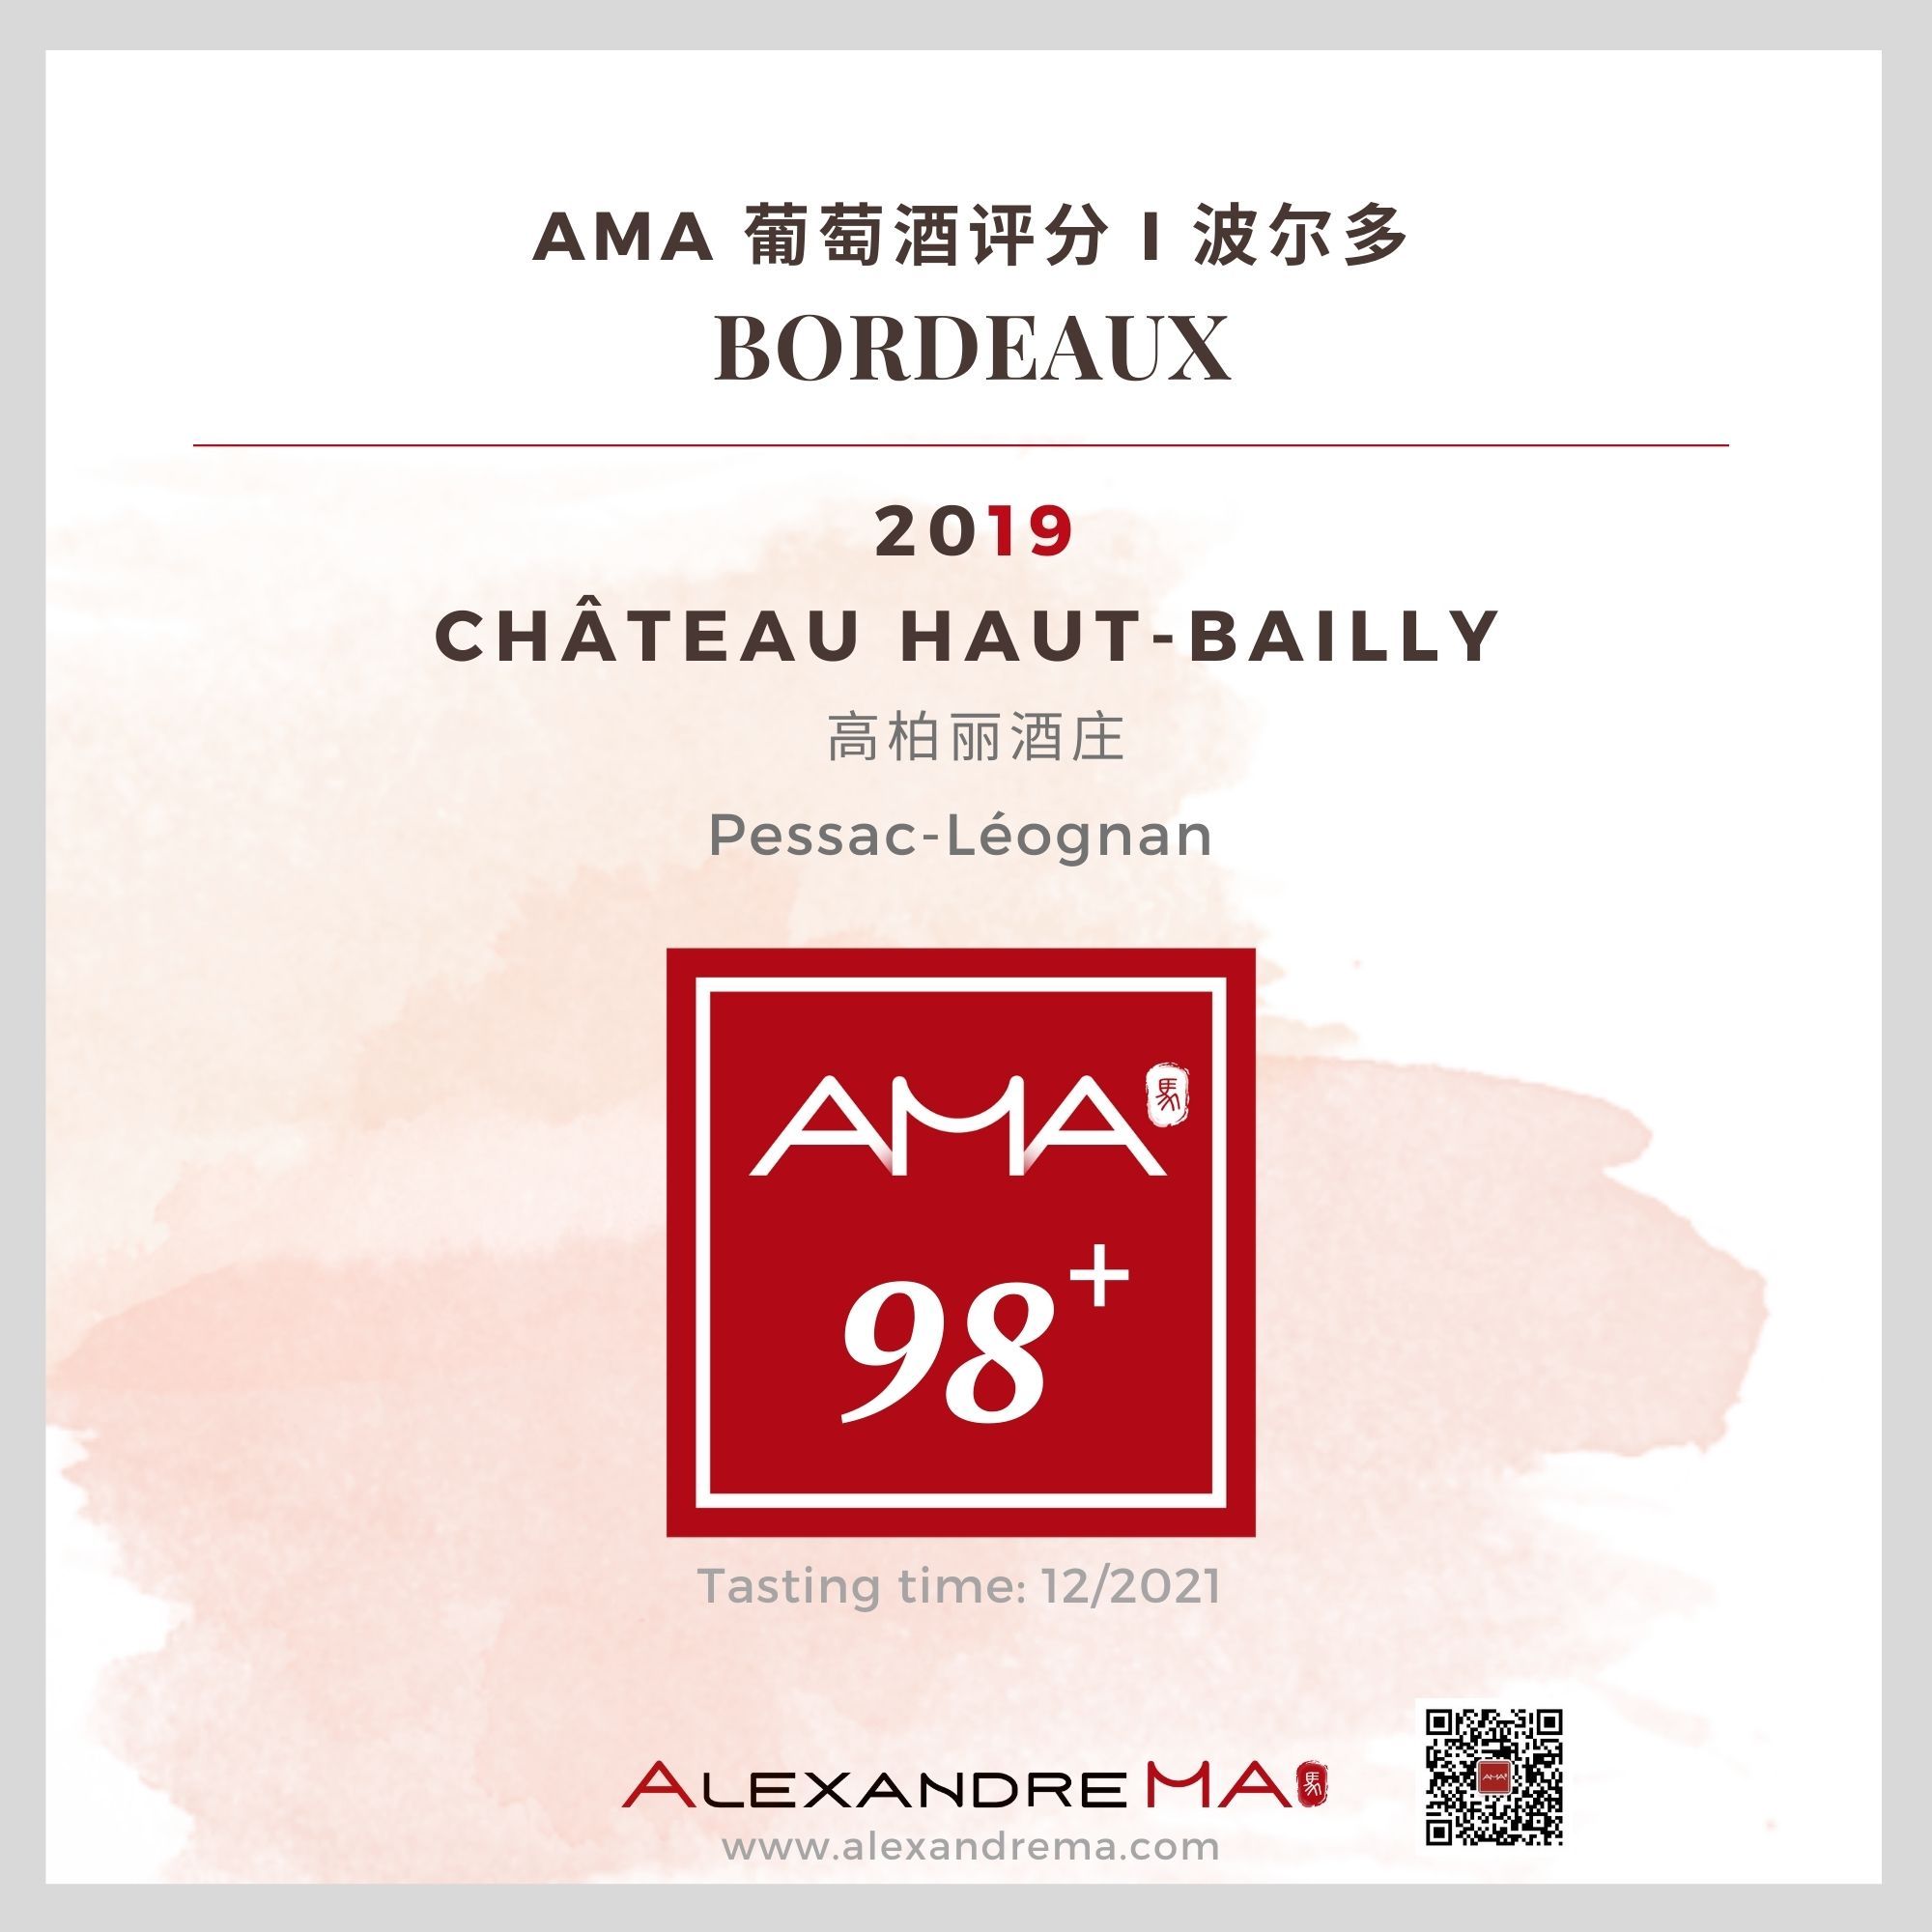 Château Haut-Bailly 2019 - Alexandre MA